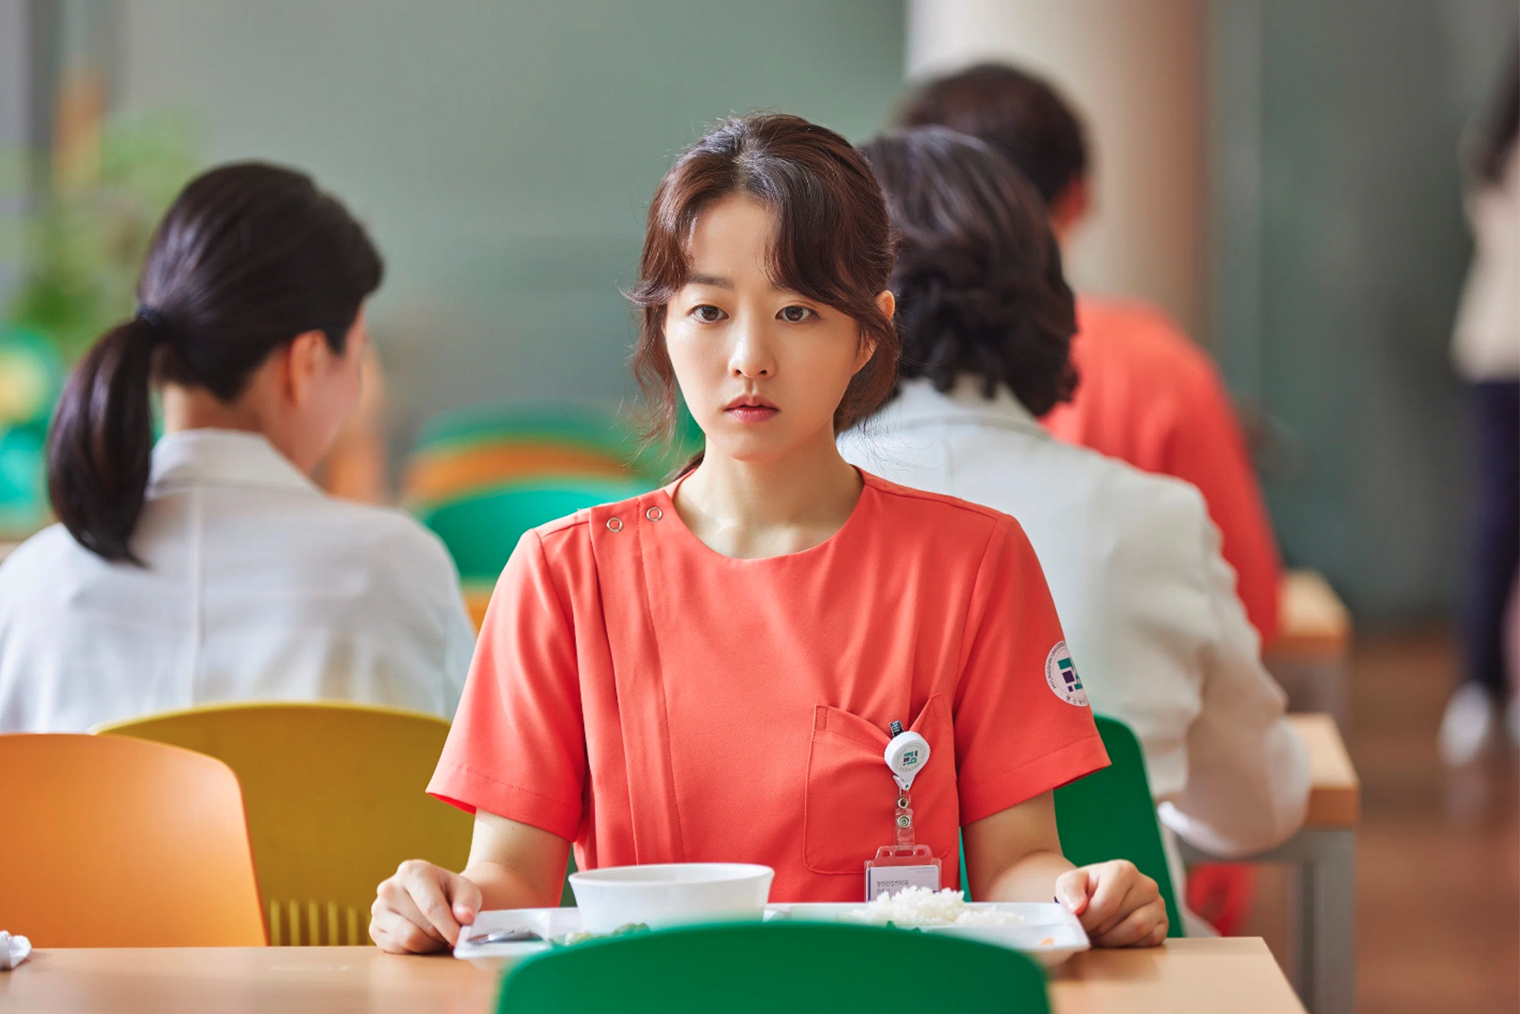 Медсестру сыграла актриса Пак По⁠-⁠ён, известная по дораме «Силачка До Бон Сун»